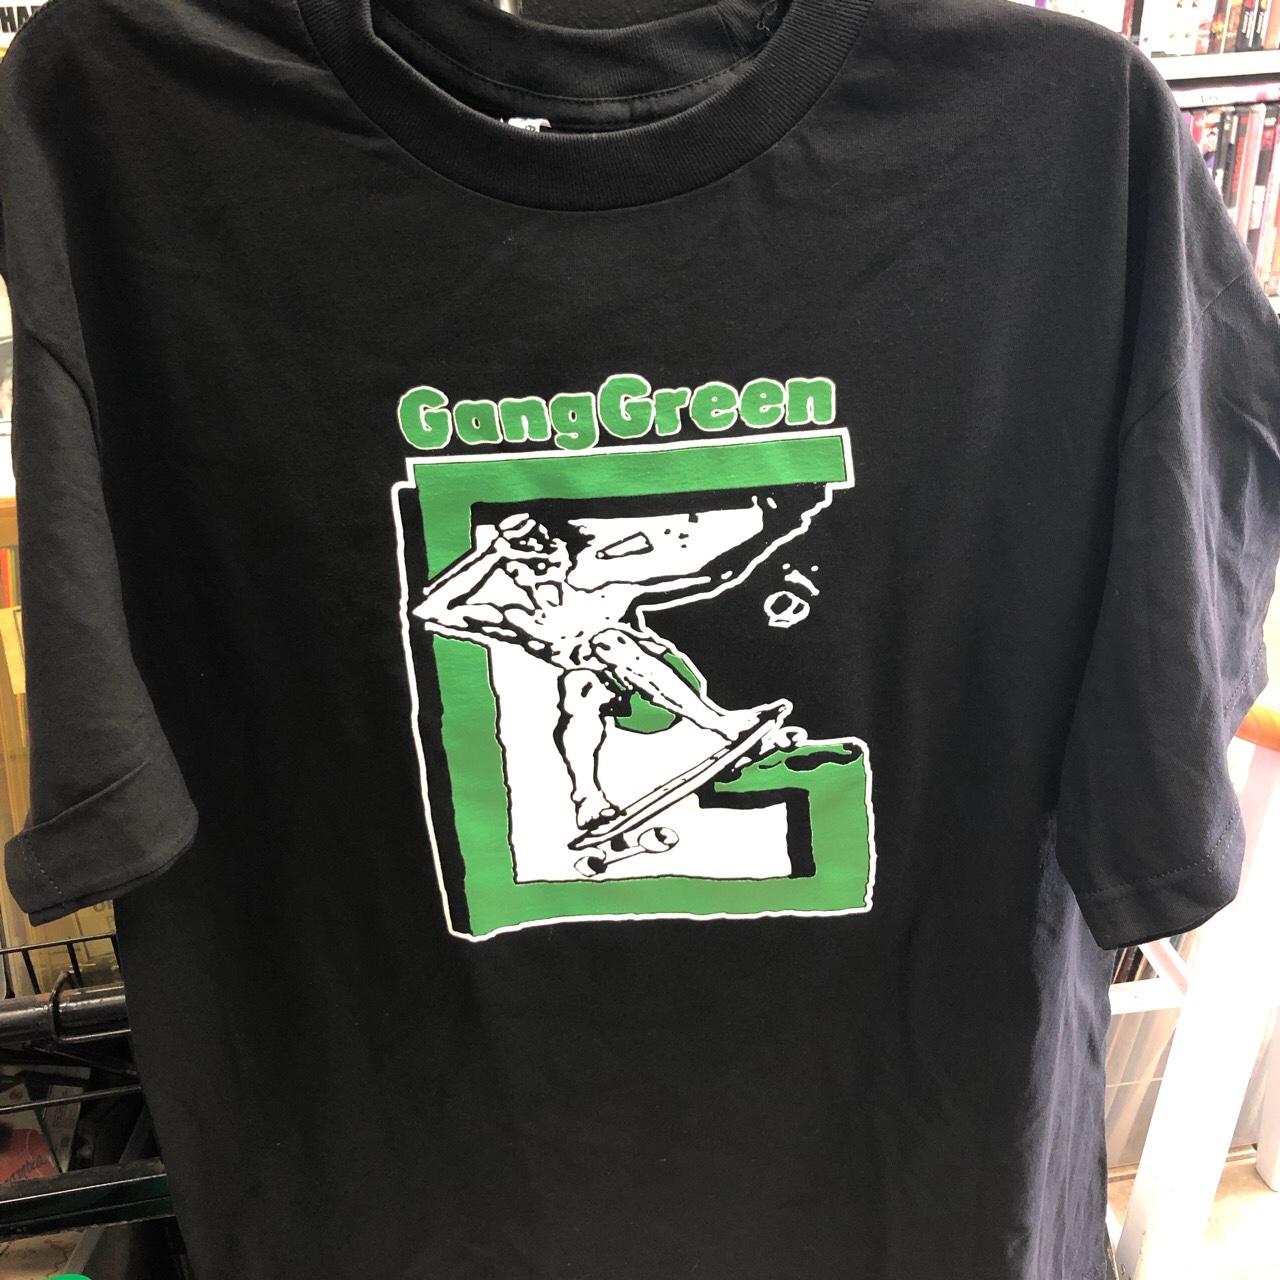 Gang Green Mens/Unisex T-Shirt